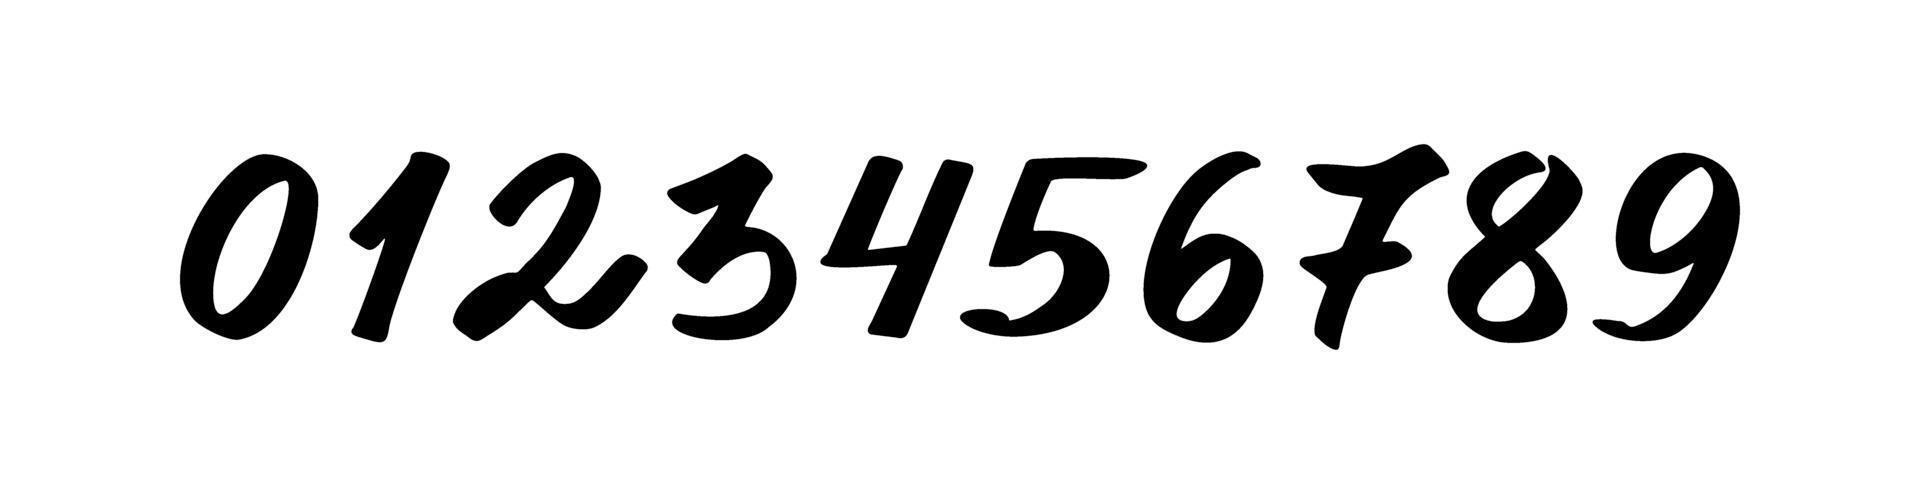 Zahlen von 0 bis 9 schwarz auf weißem Hintergrund vektor